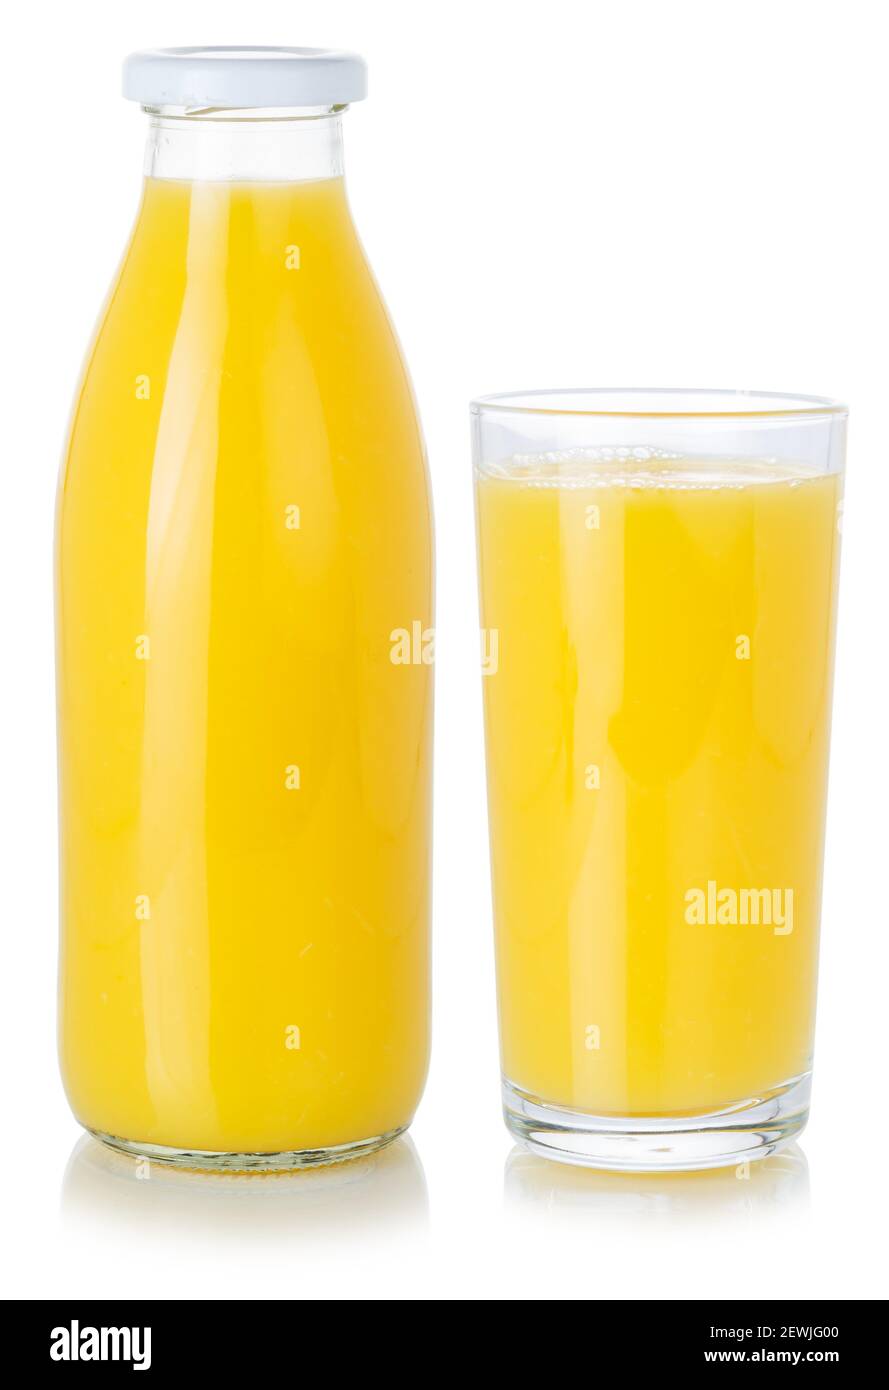 Succo di frutta, bevanda frullato all'arancia in una bottiglia e un bicchiere isolati su sfondo bianco. Foto Stock